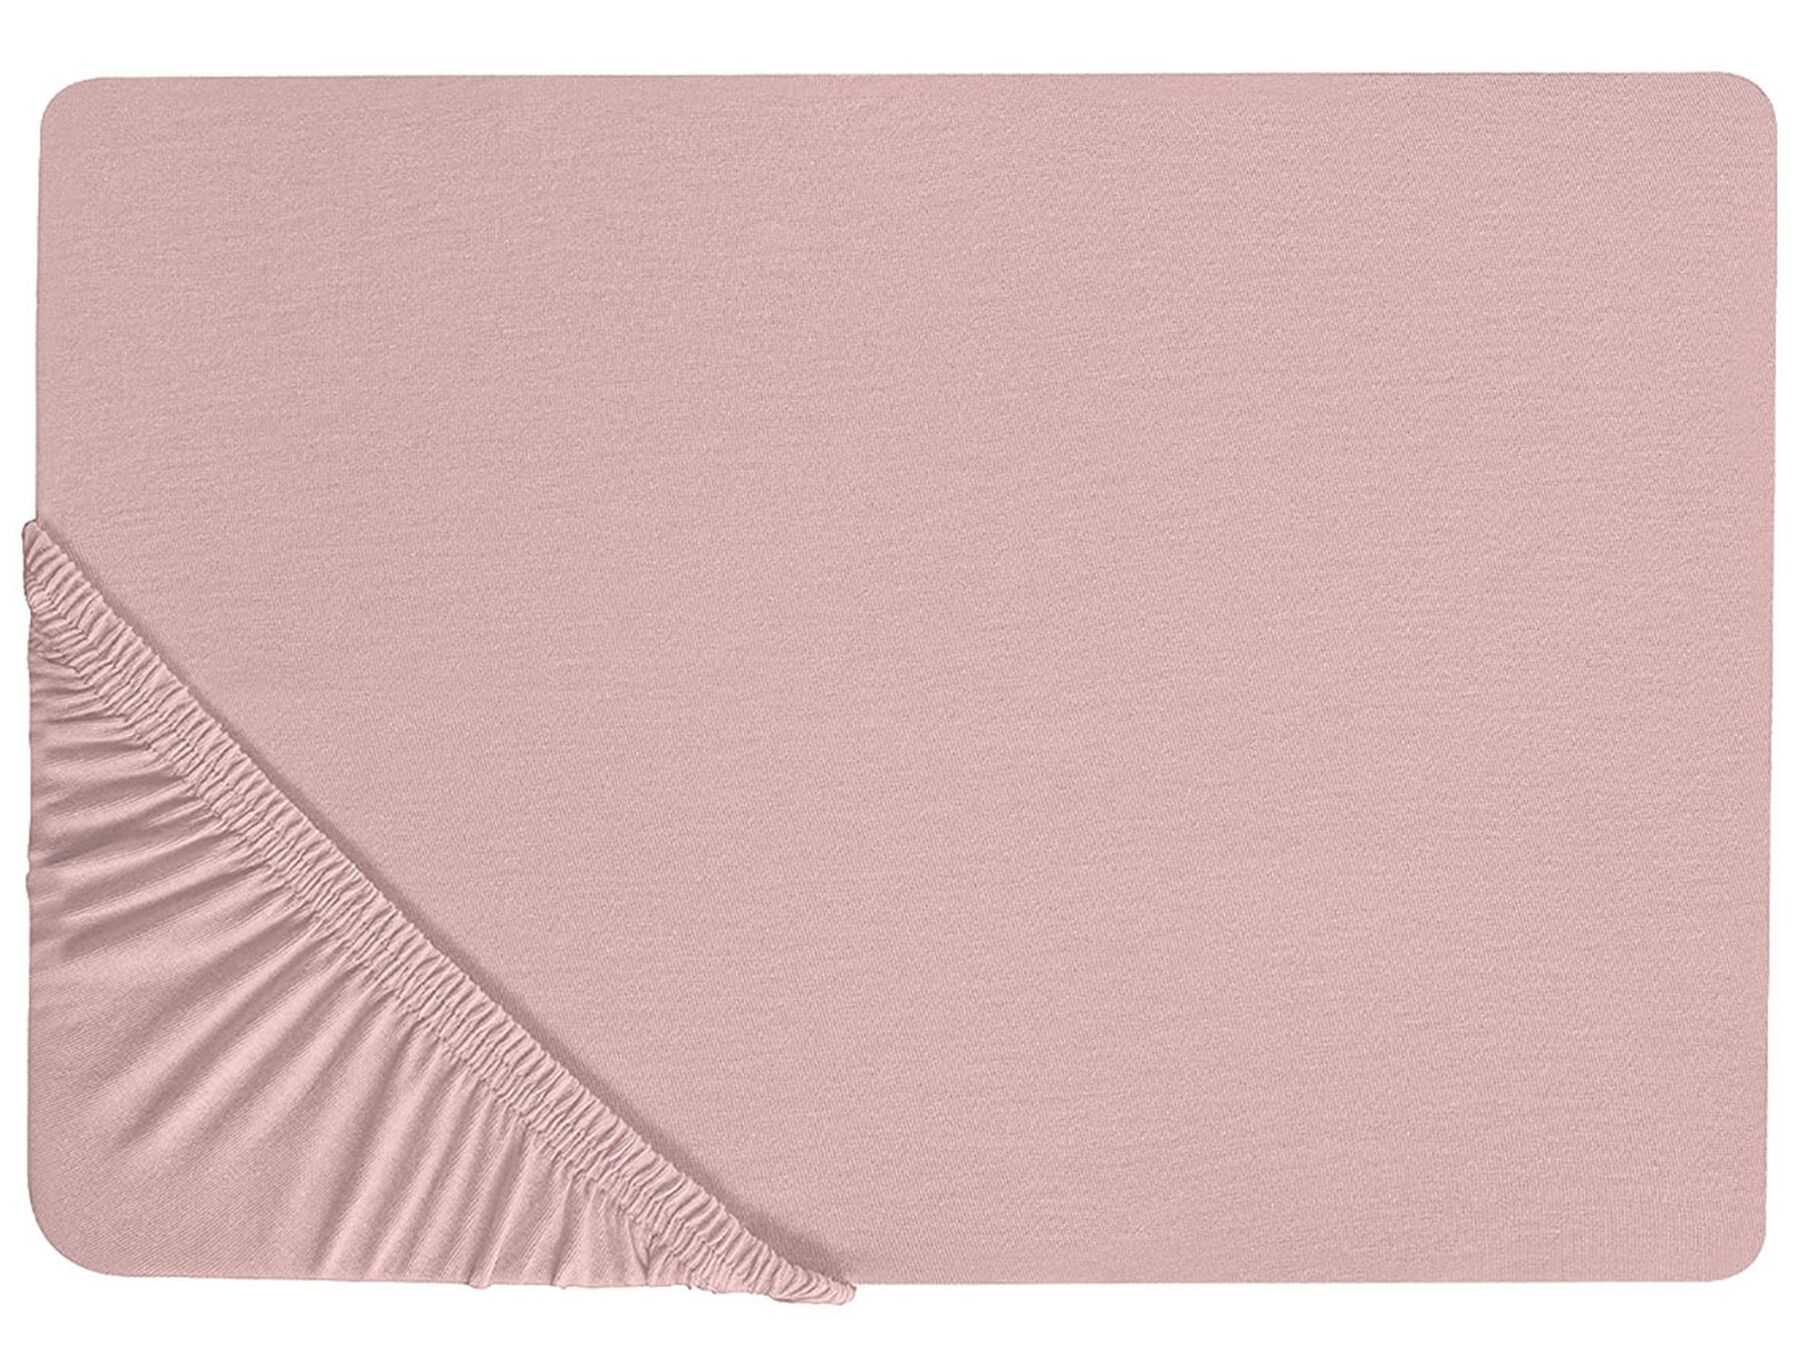 Rózsaszín pamut gumis lepedő 90 x 200 cm HOFUF_815896